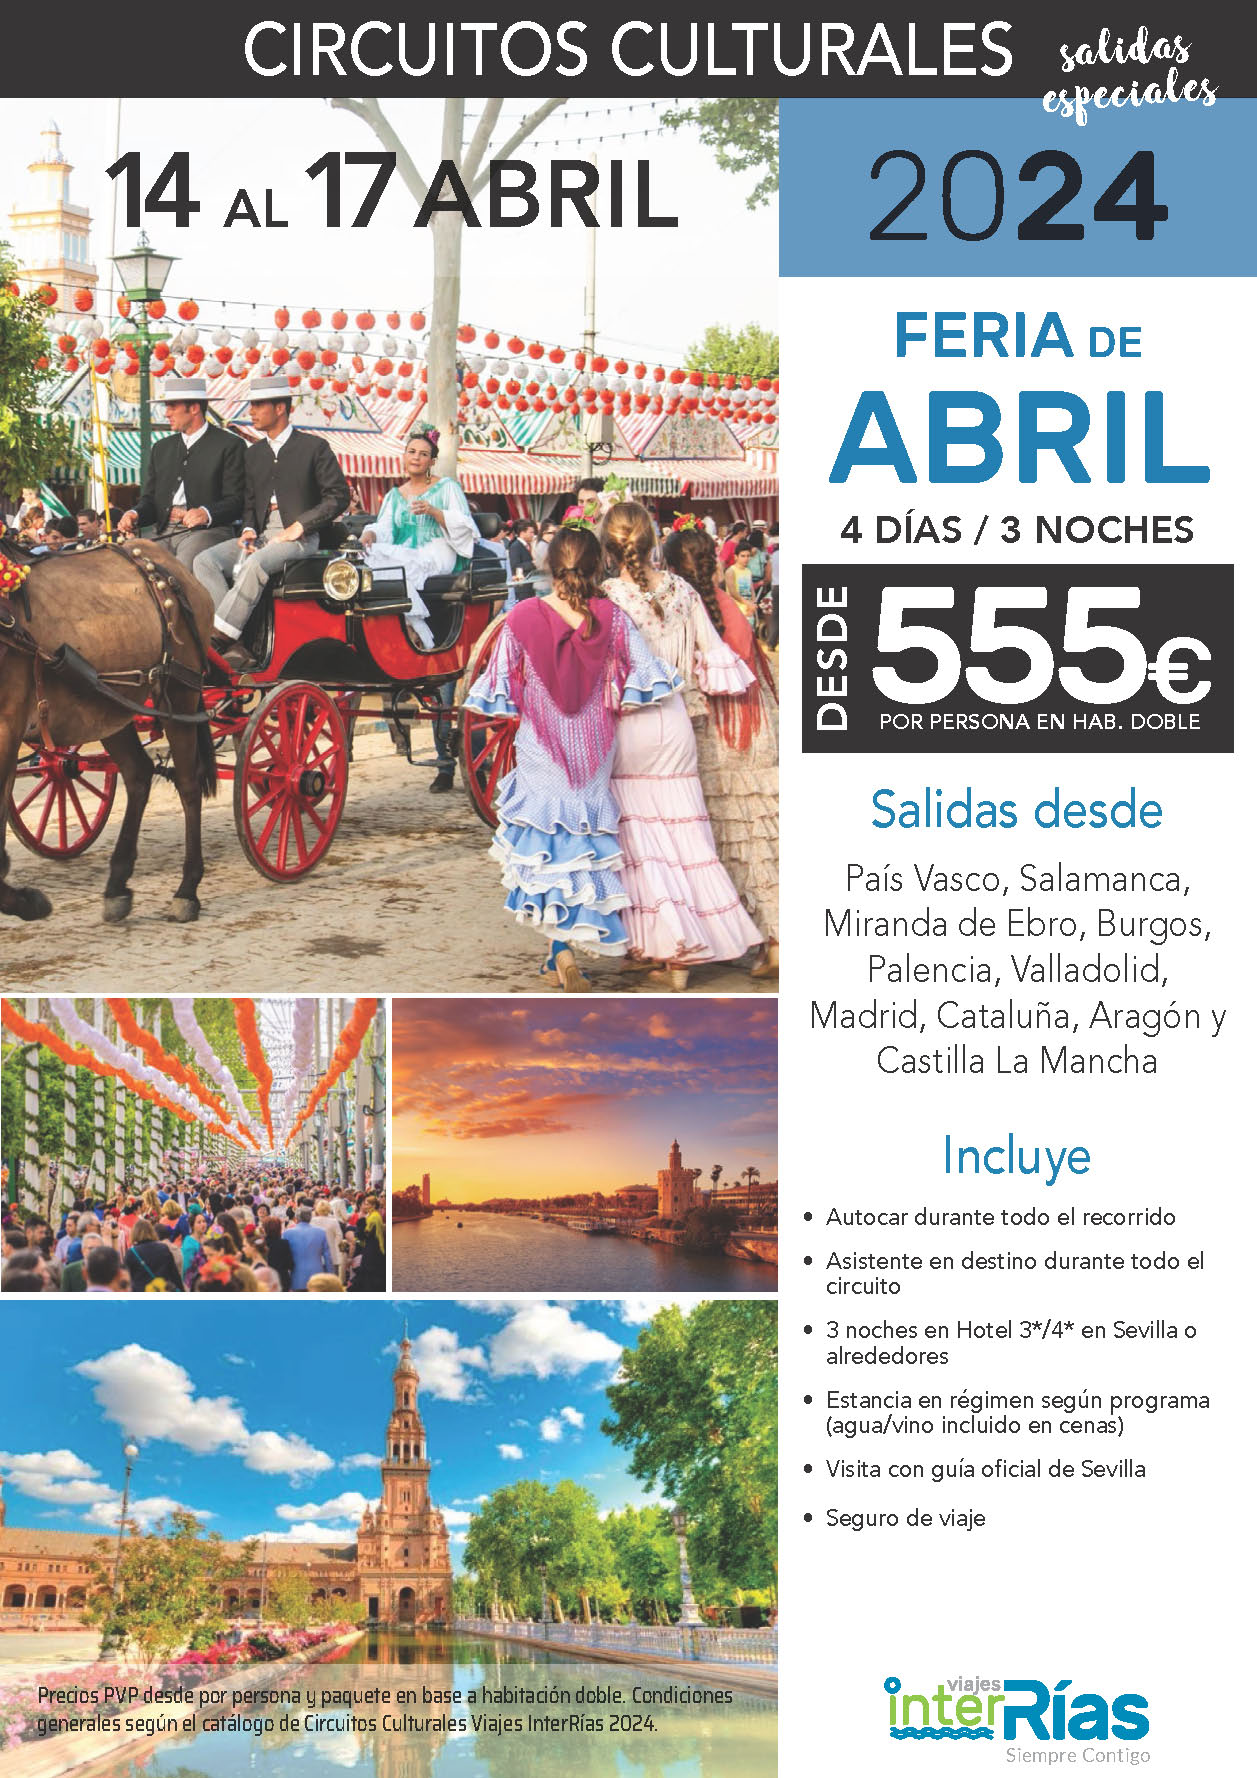 Oferta Interrias Feria de Abril 2024 circuito en autocar 4 dias salidas 14 abril 2024 desde el Norte de España